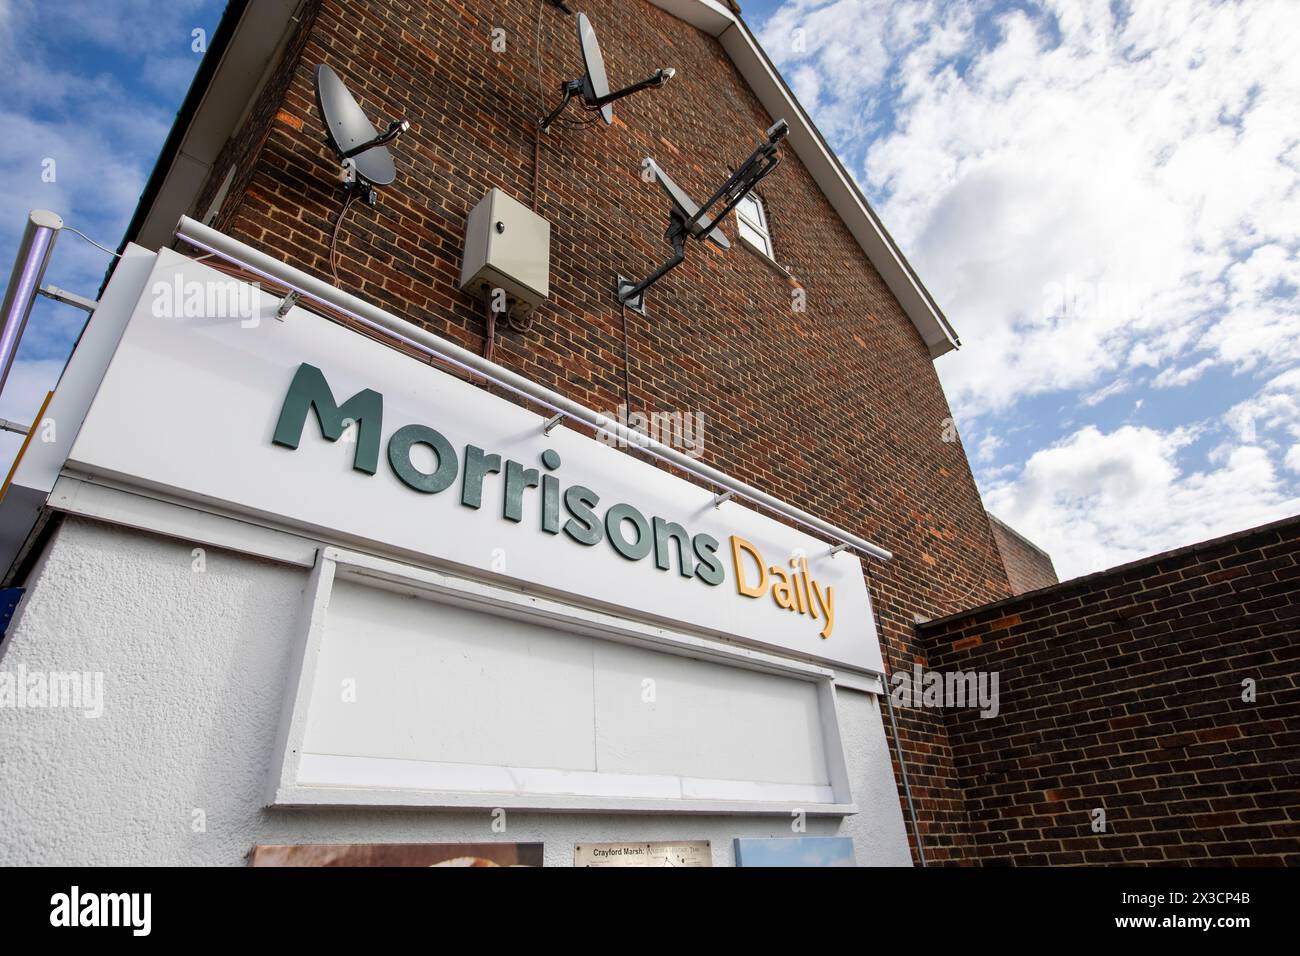 Morrisons Daily - un minimarket gestito dal supermercato Morrisons come alternativa al tradizionale negozio all'angolo. Slade Green, Kent, Regno Unito Foto Stock